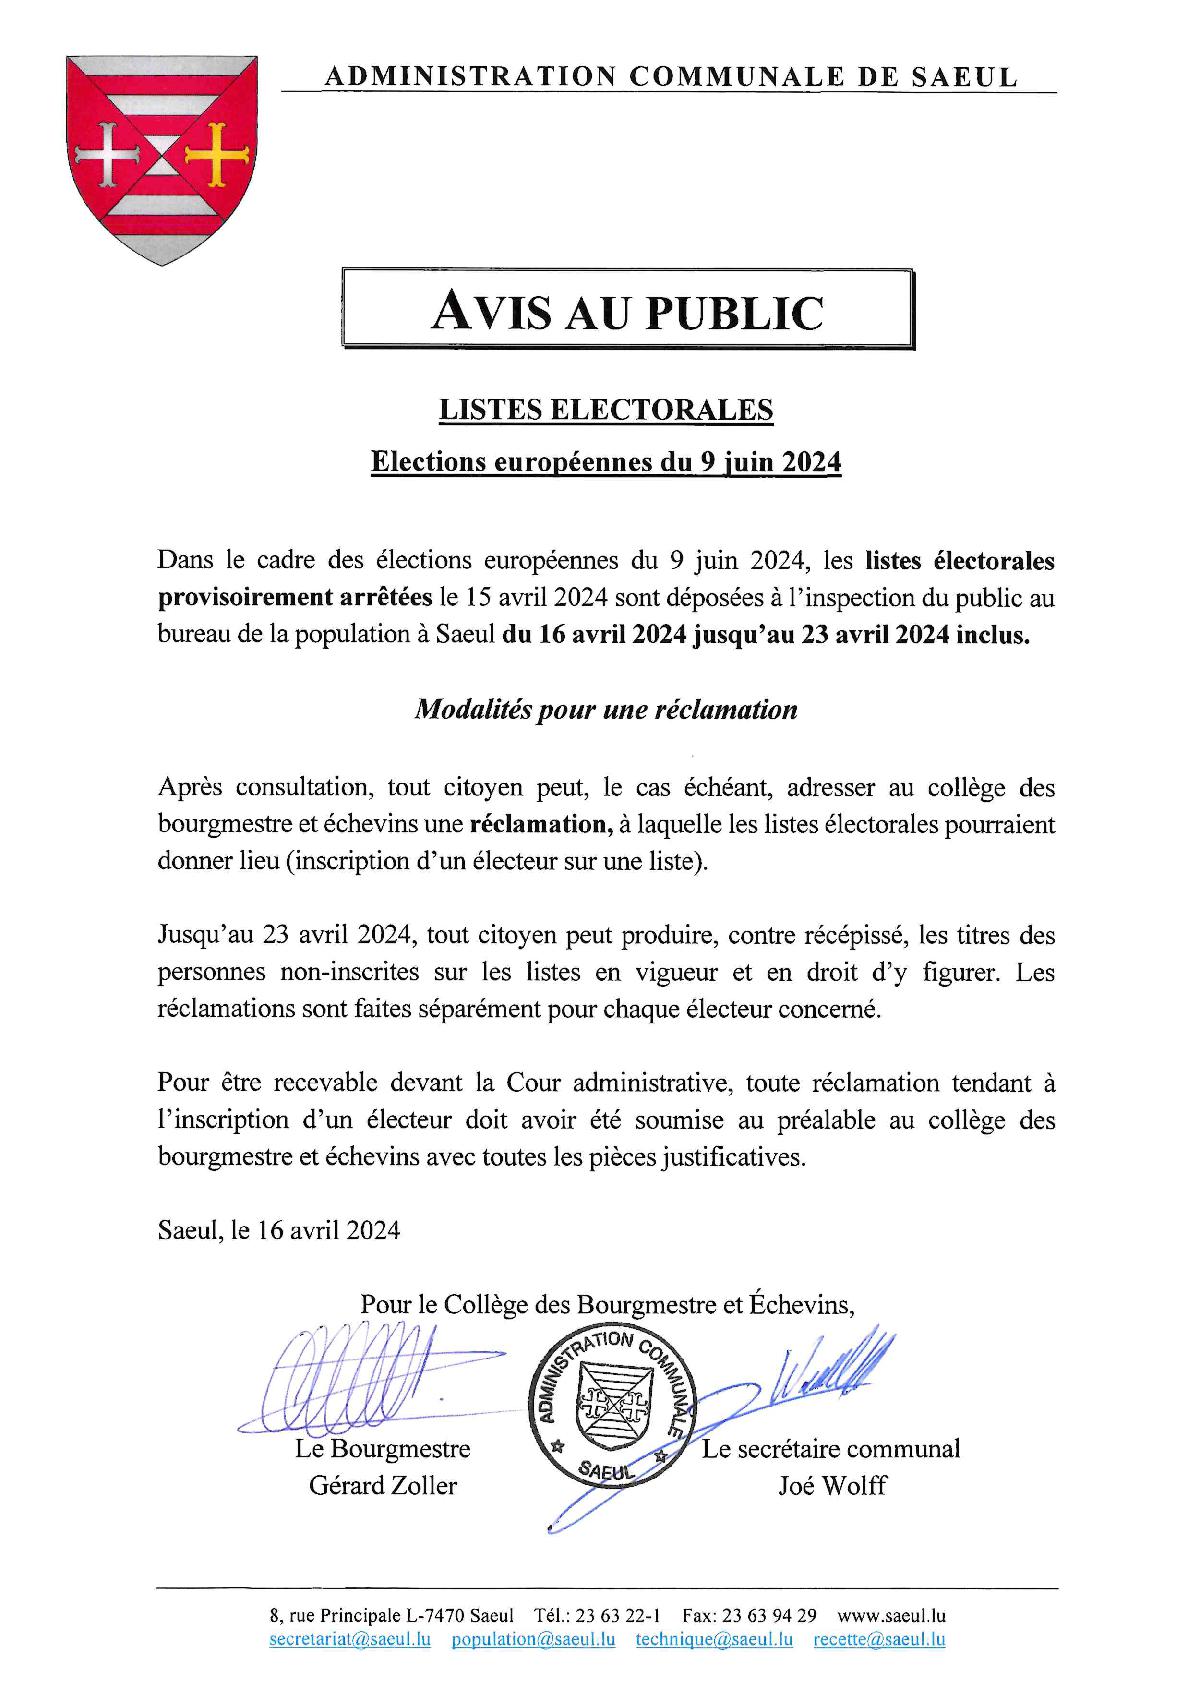 AVIS AU PUBLIC | Élections européennes - Listes électorales provisoirement arrêtées